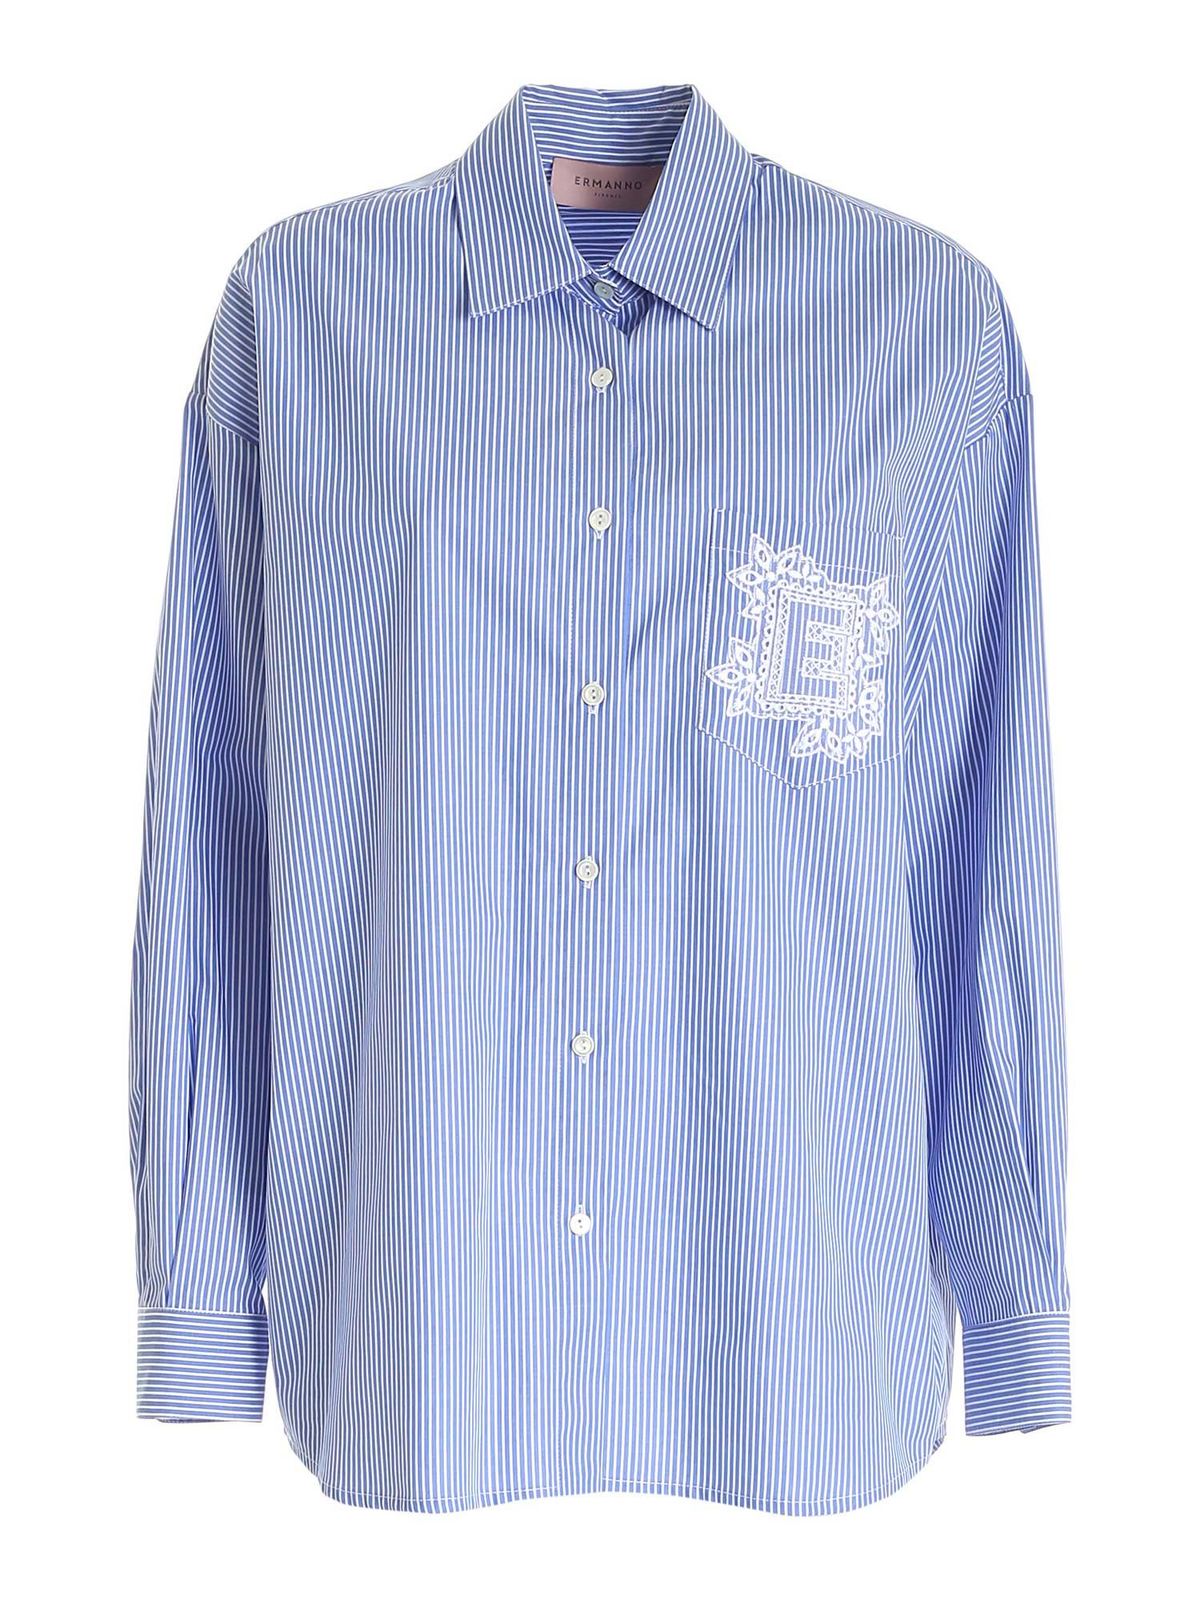 Homme Vêtements Chemises Chemises casual et boutonnées Chemise Coton Ermanno Scervino pour homme en coloris Bleu 